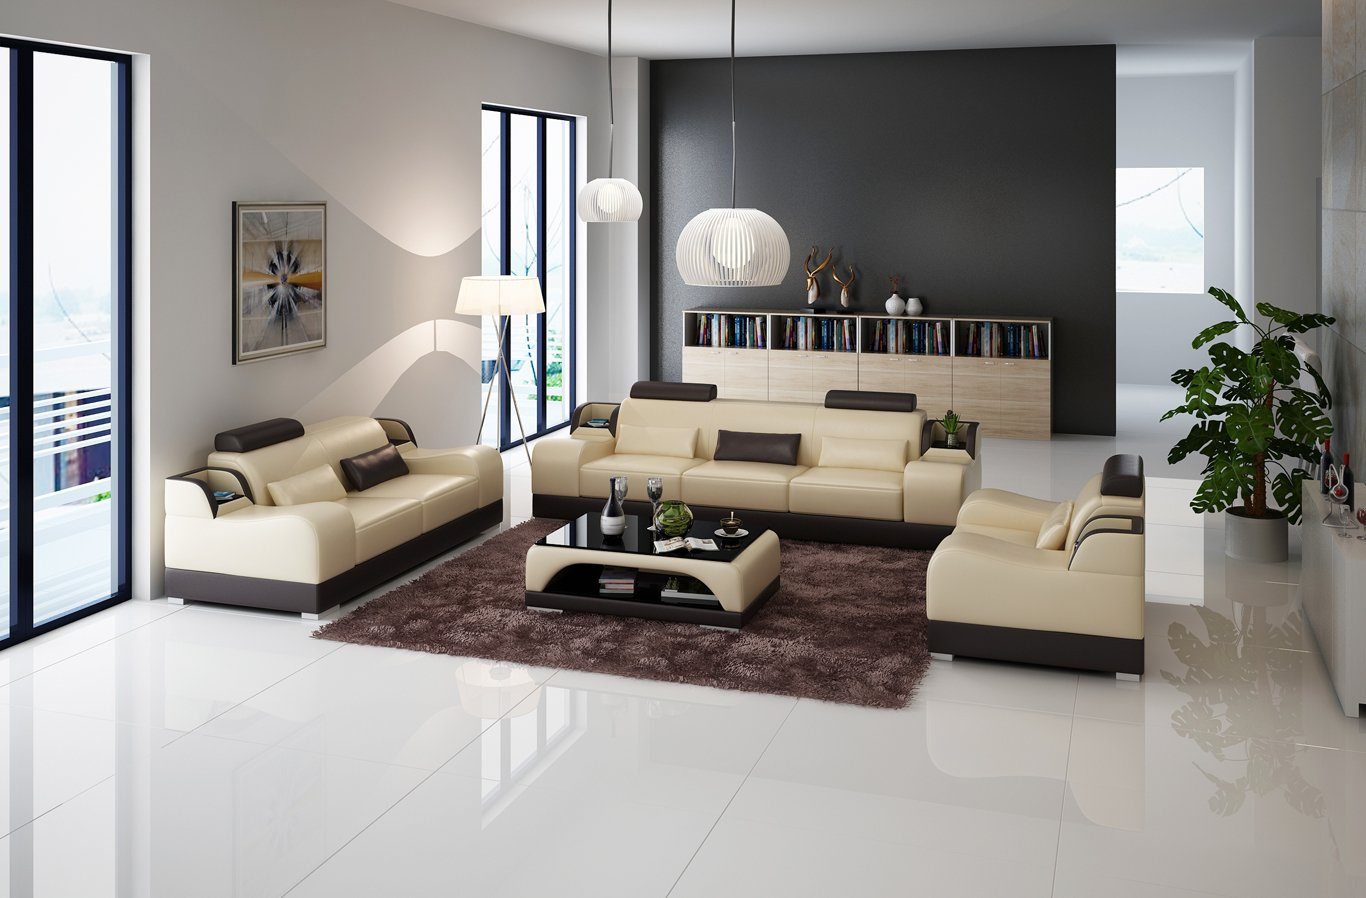 JVmoebel Sofa 3+2+2 Sitzer Set Design Sofa Polster Couchen Couch Modern Luxus Neu, Made in Europe Beige/Braun